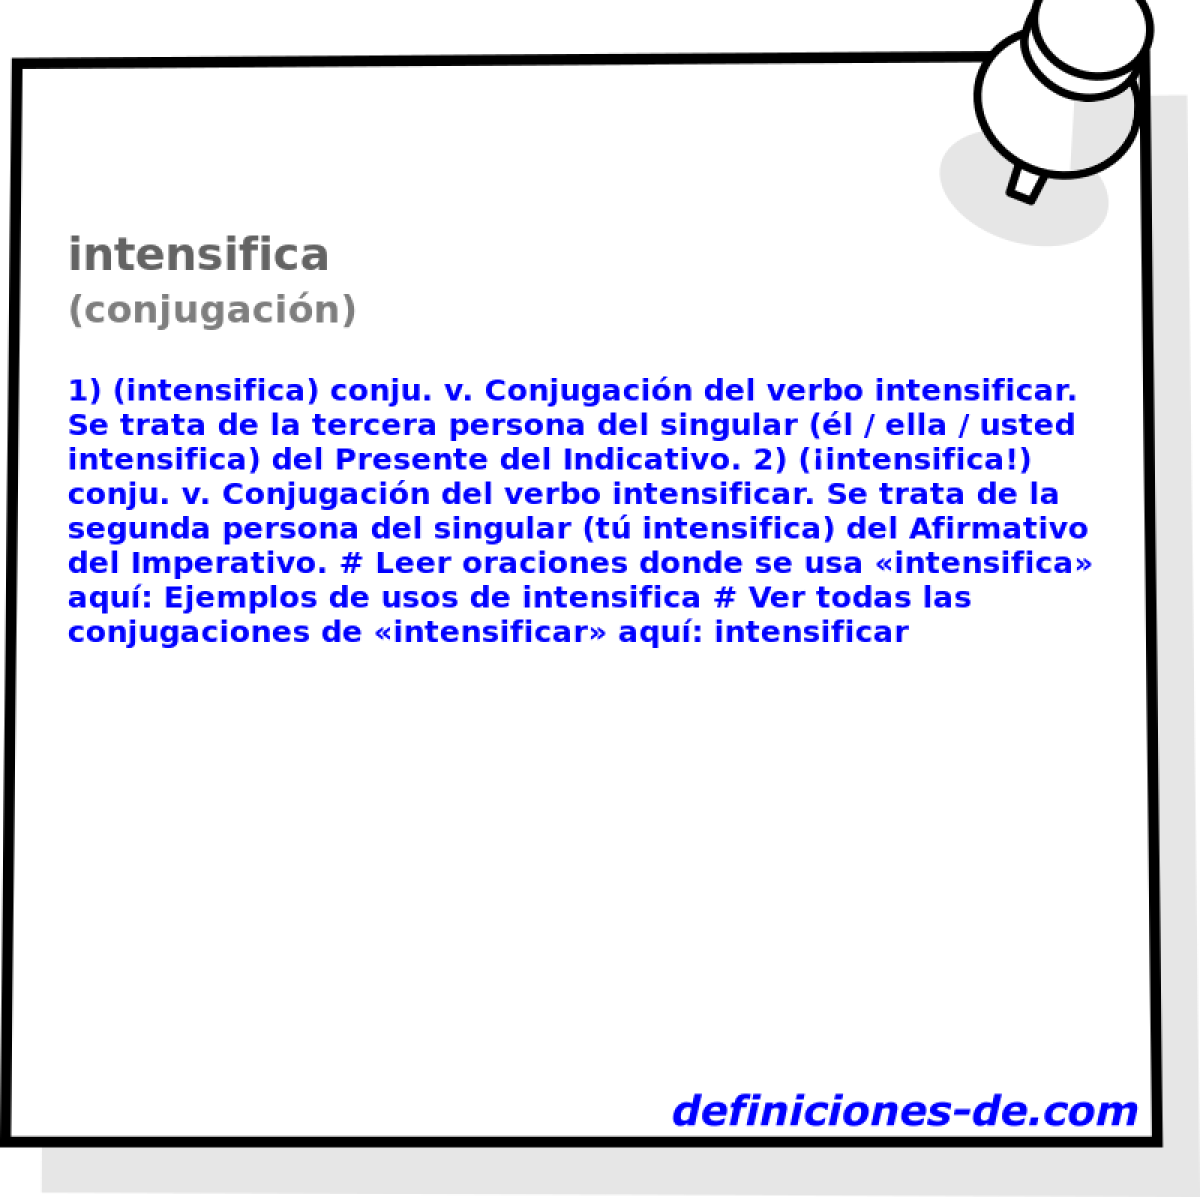 intensifica (conjugacin)